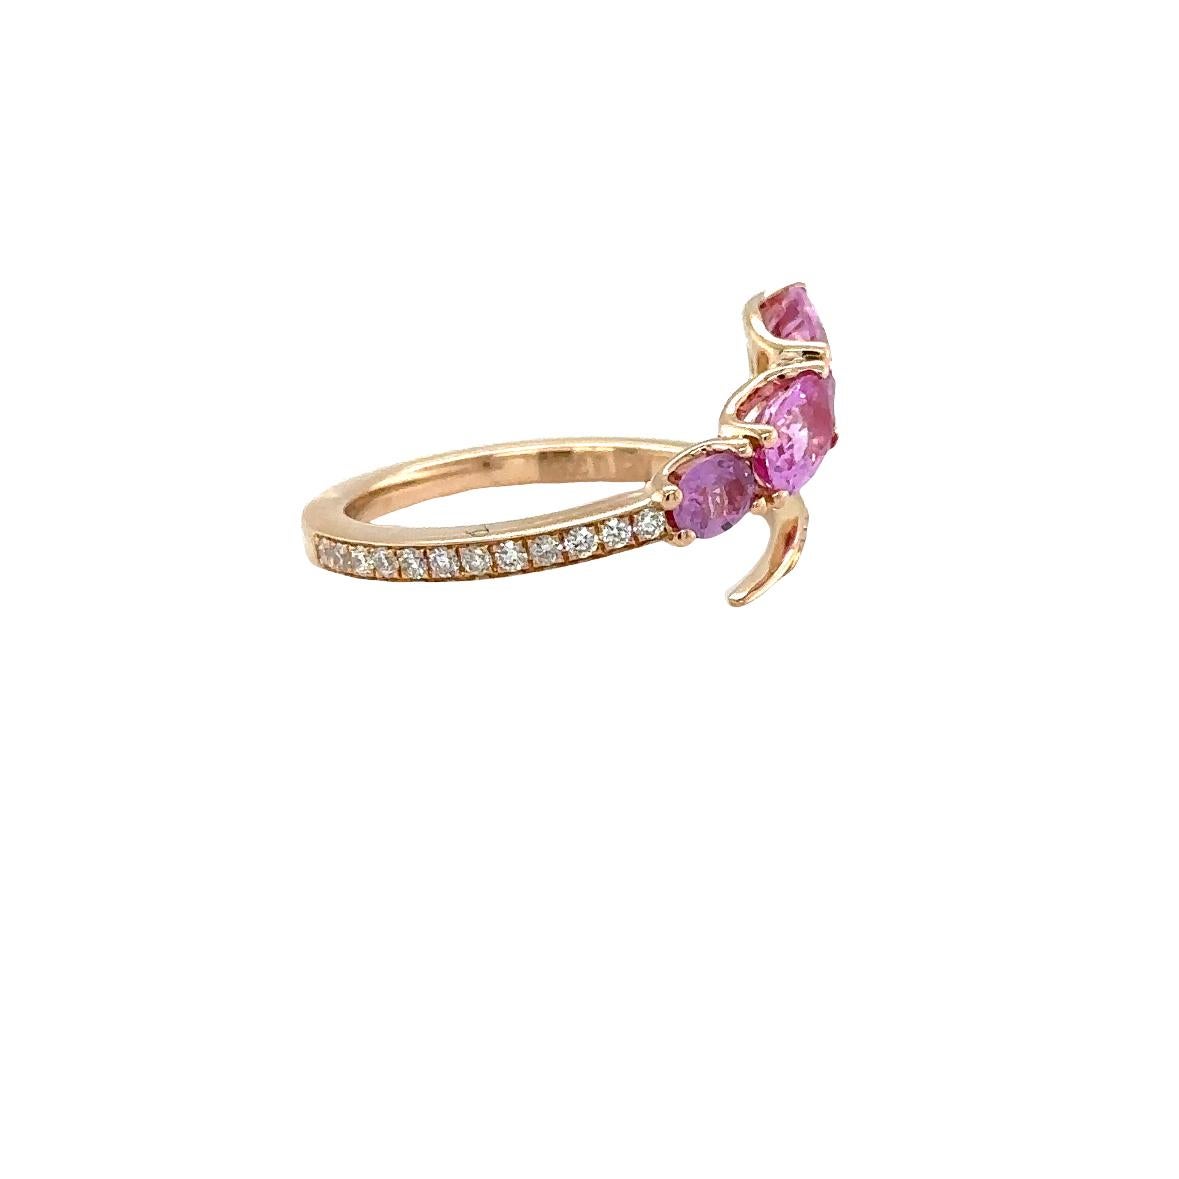 Wir präsentieren den Ring Riad aus 18kt Rose Gold mit einem Gewicht von 3,30 Gramm. Dieses exquisite Stück besteht aus einem ovalen rosa Saphir mit einem Gewicht von 1,74 Karat und ist mit Diamanten der Farbe G und Reinheit VS von insgesamt 0,26